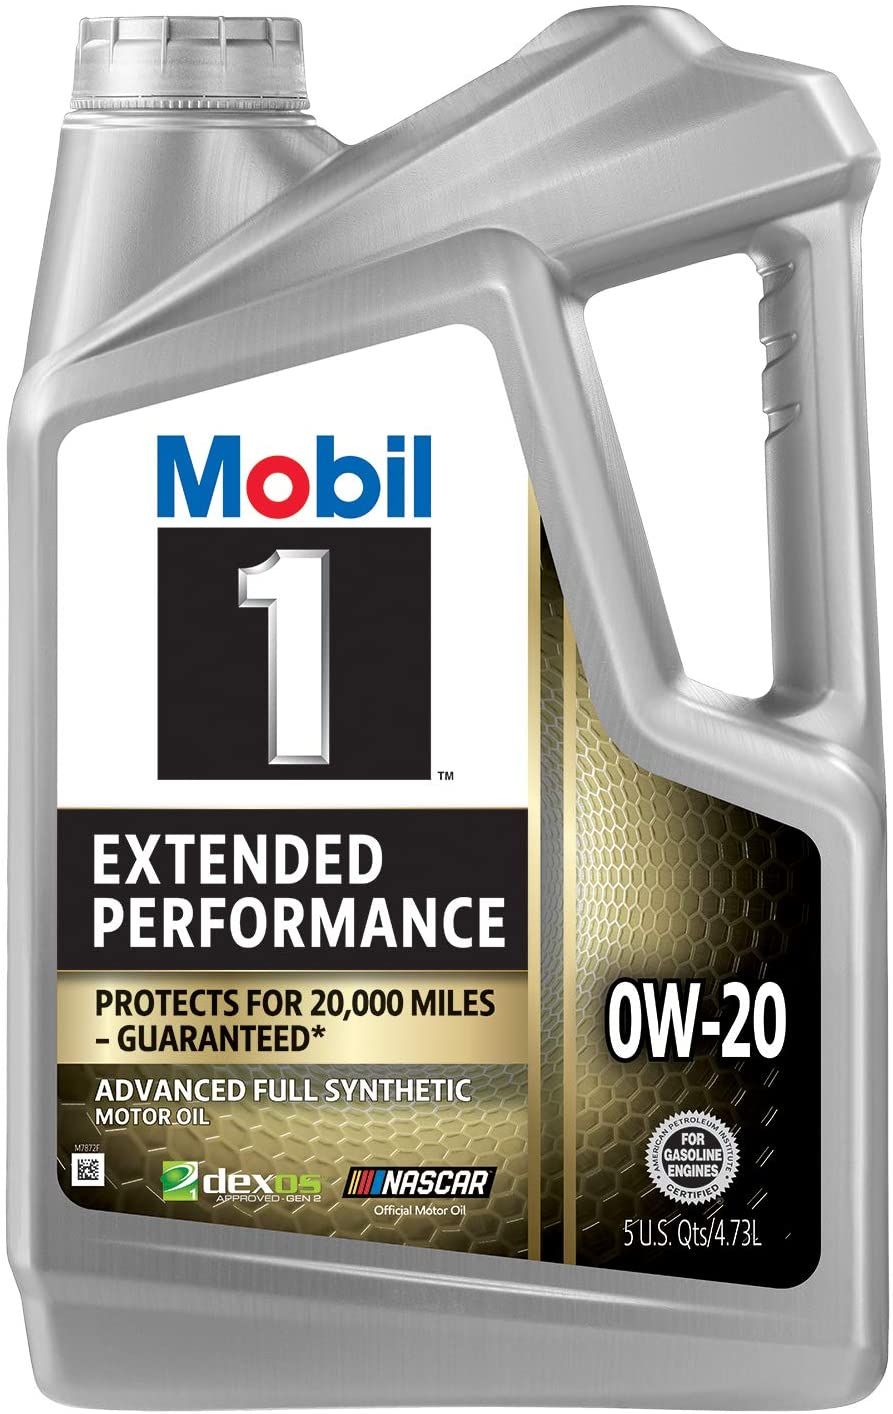 Mobil 1 Extended Performance Full Syntetisk 0W-20 Motor Olje 4.73 L